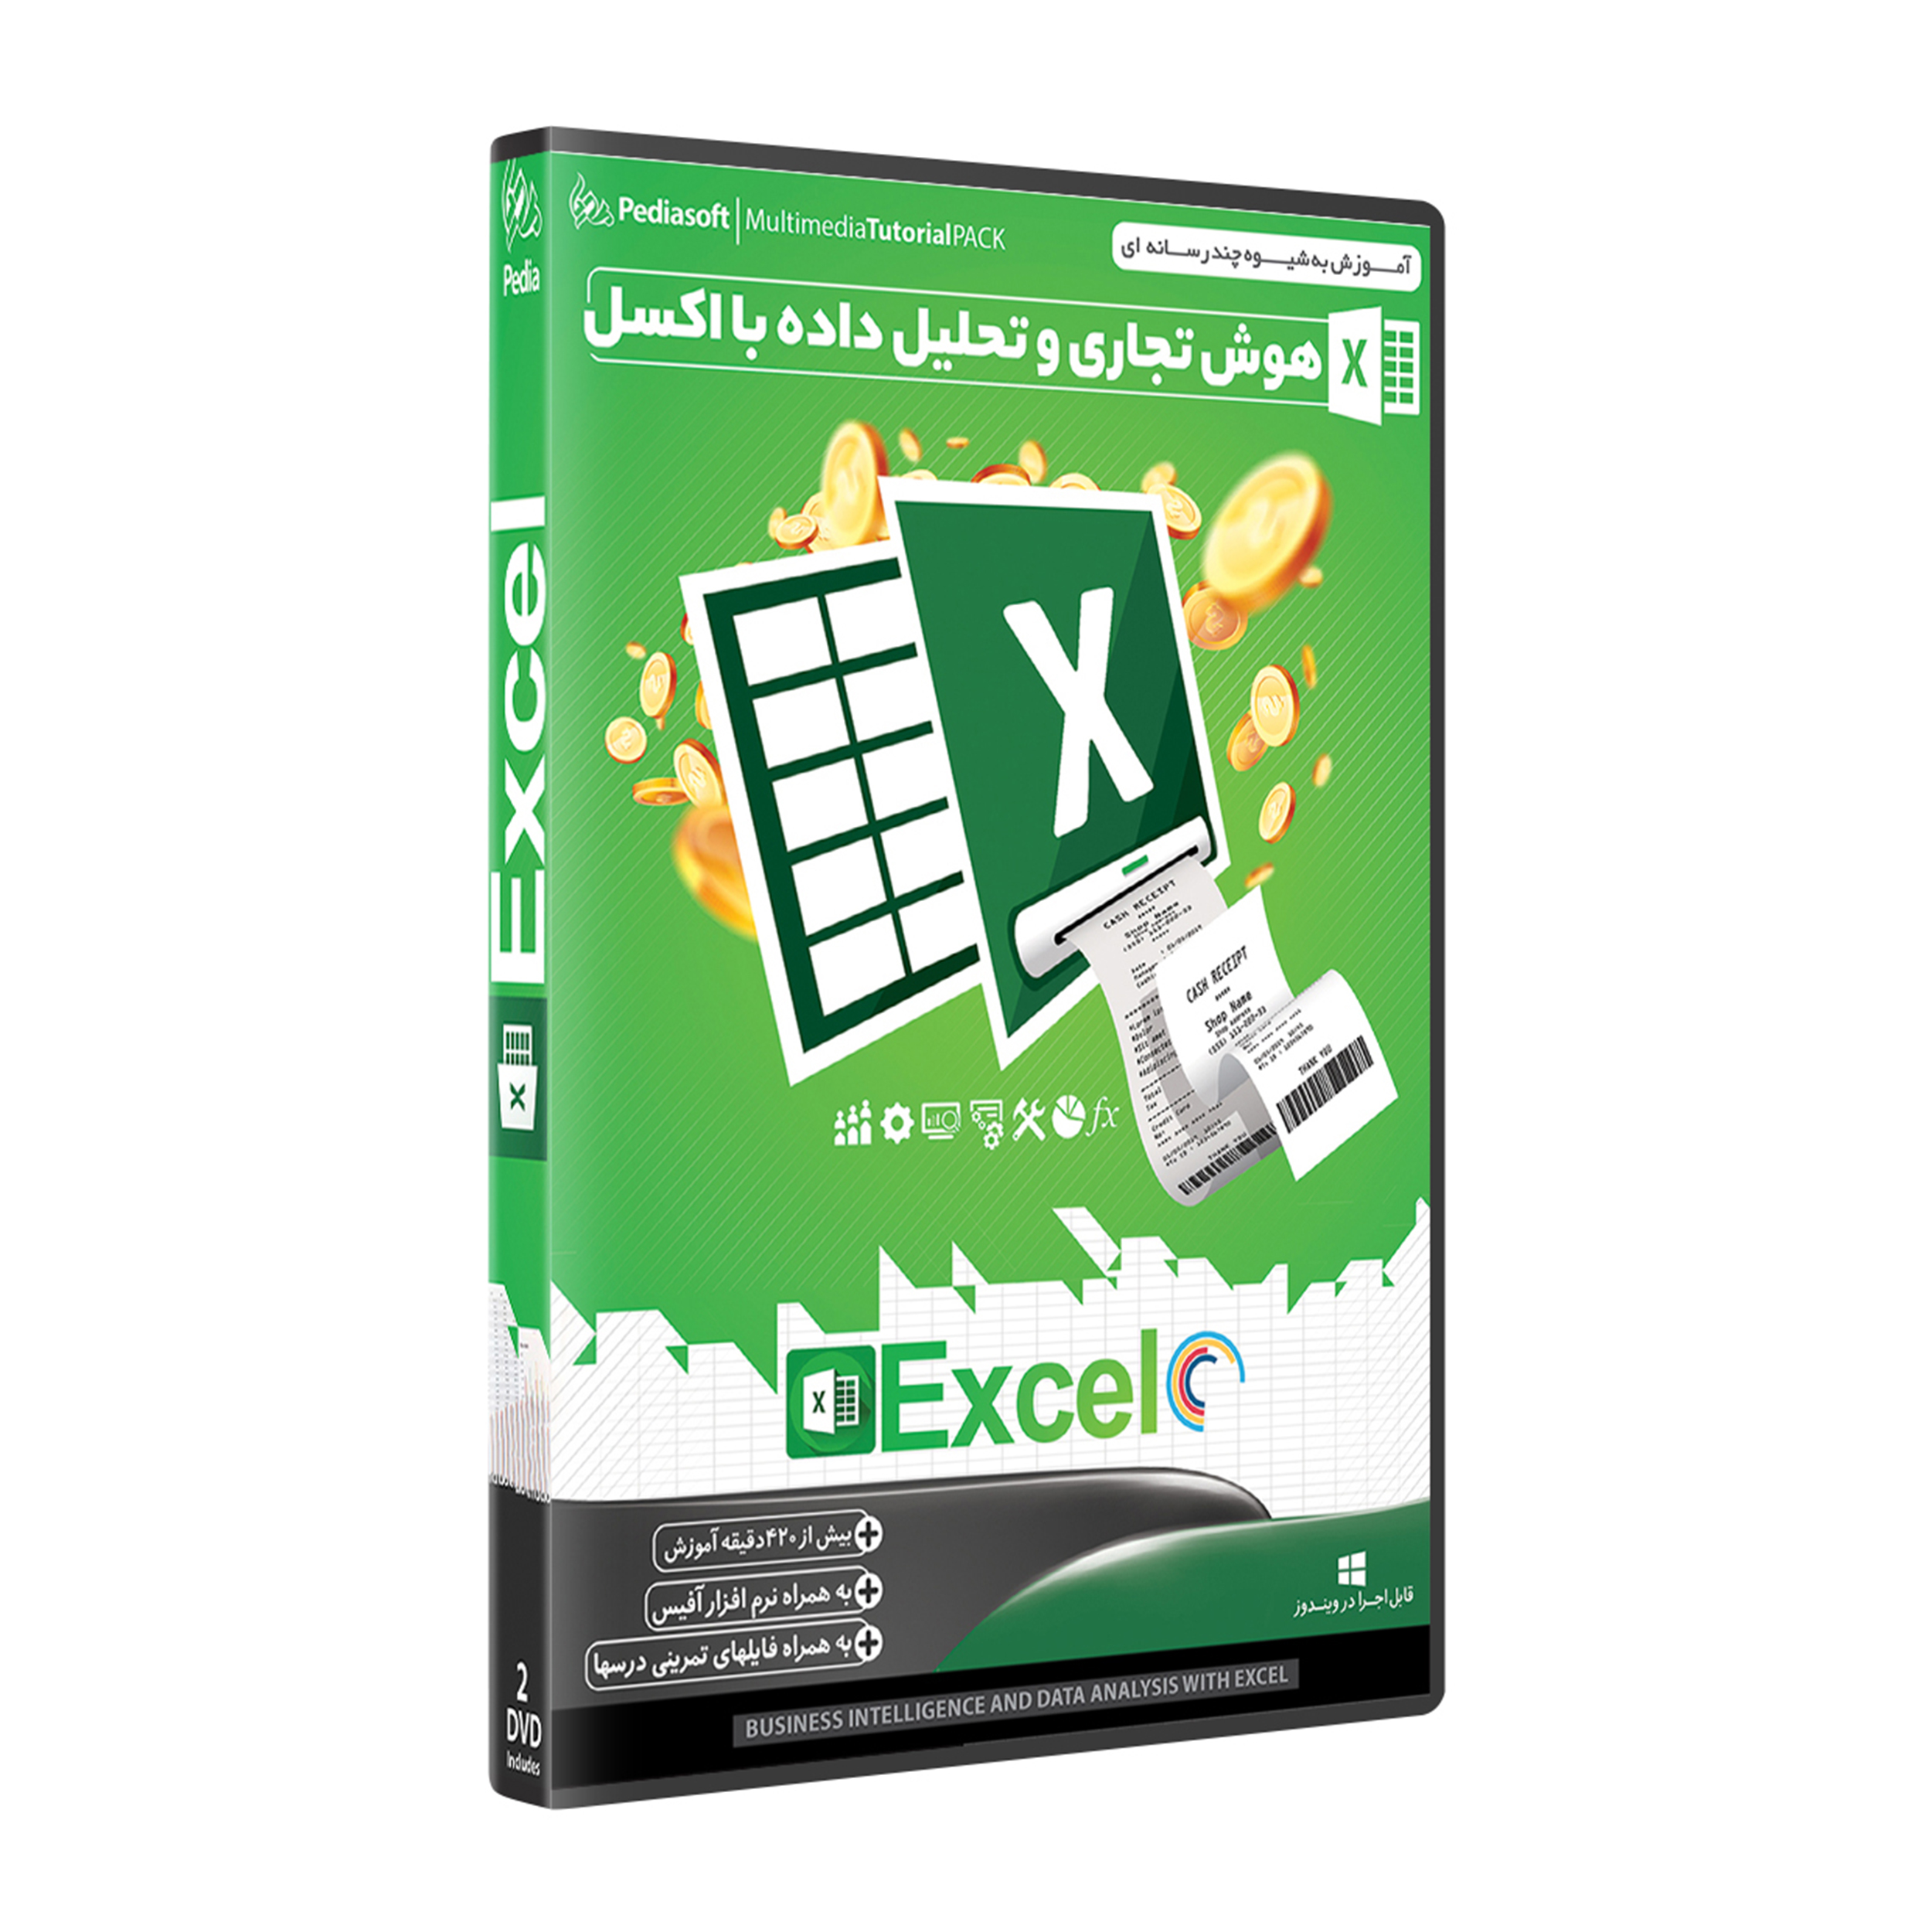 نرم افزار آموزش هوش تجاری و تحلیل داده با اکسل Excel نشر پدیا سافت